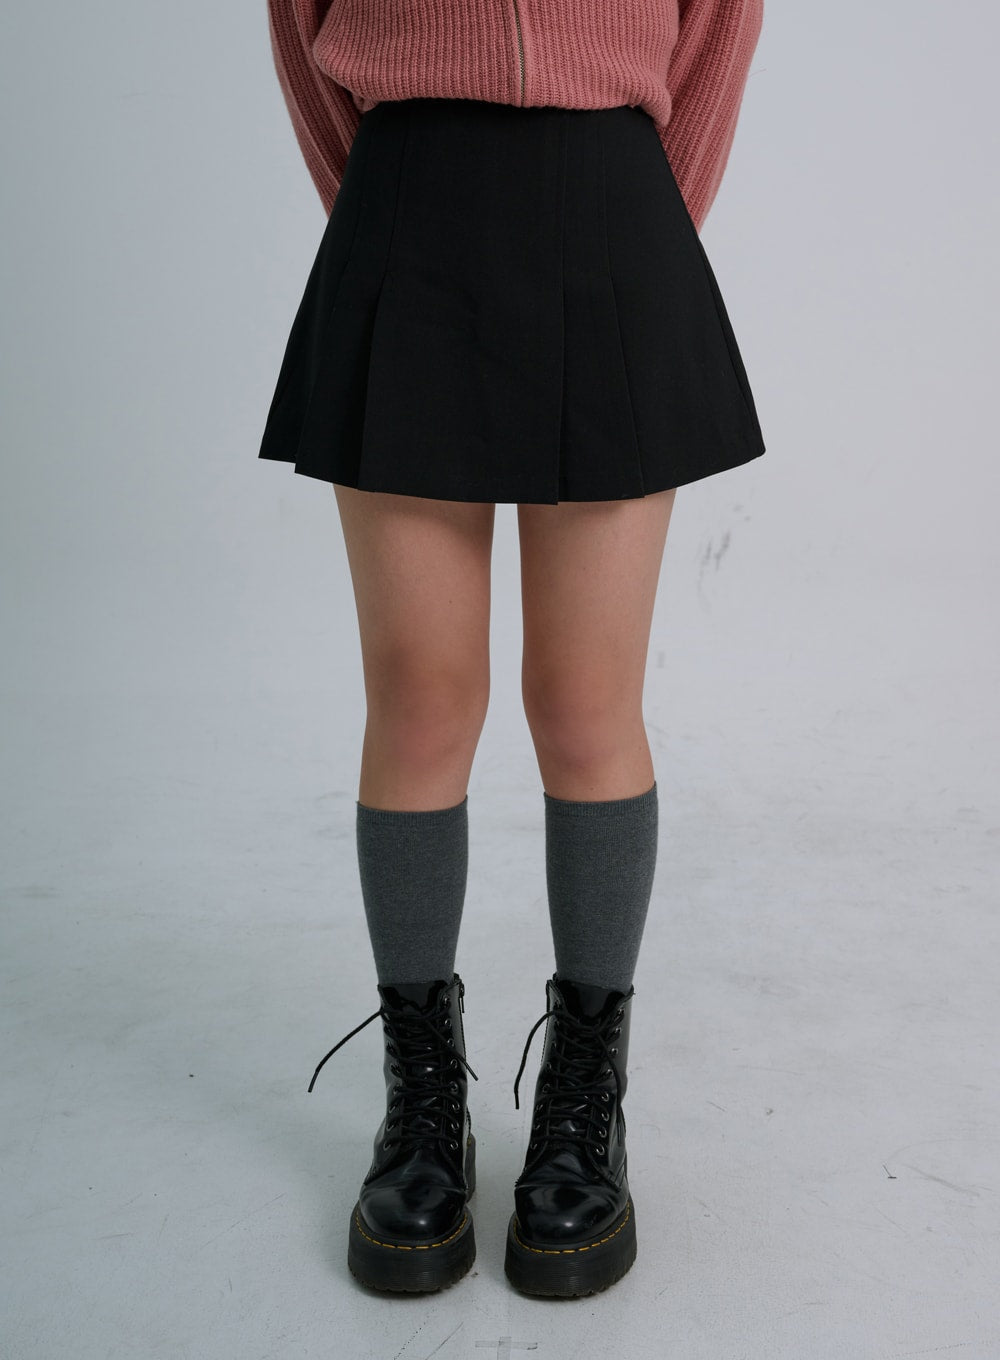 skater skirt outfits tumblr